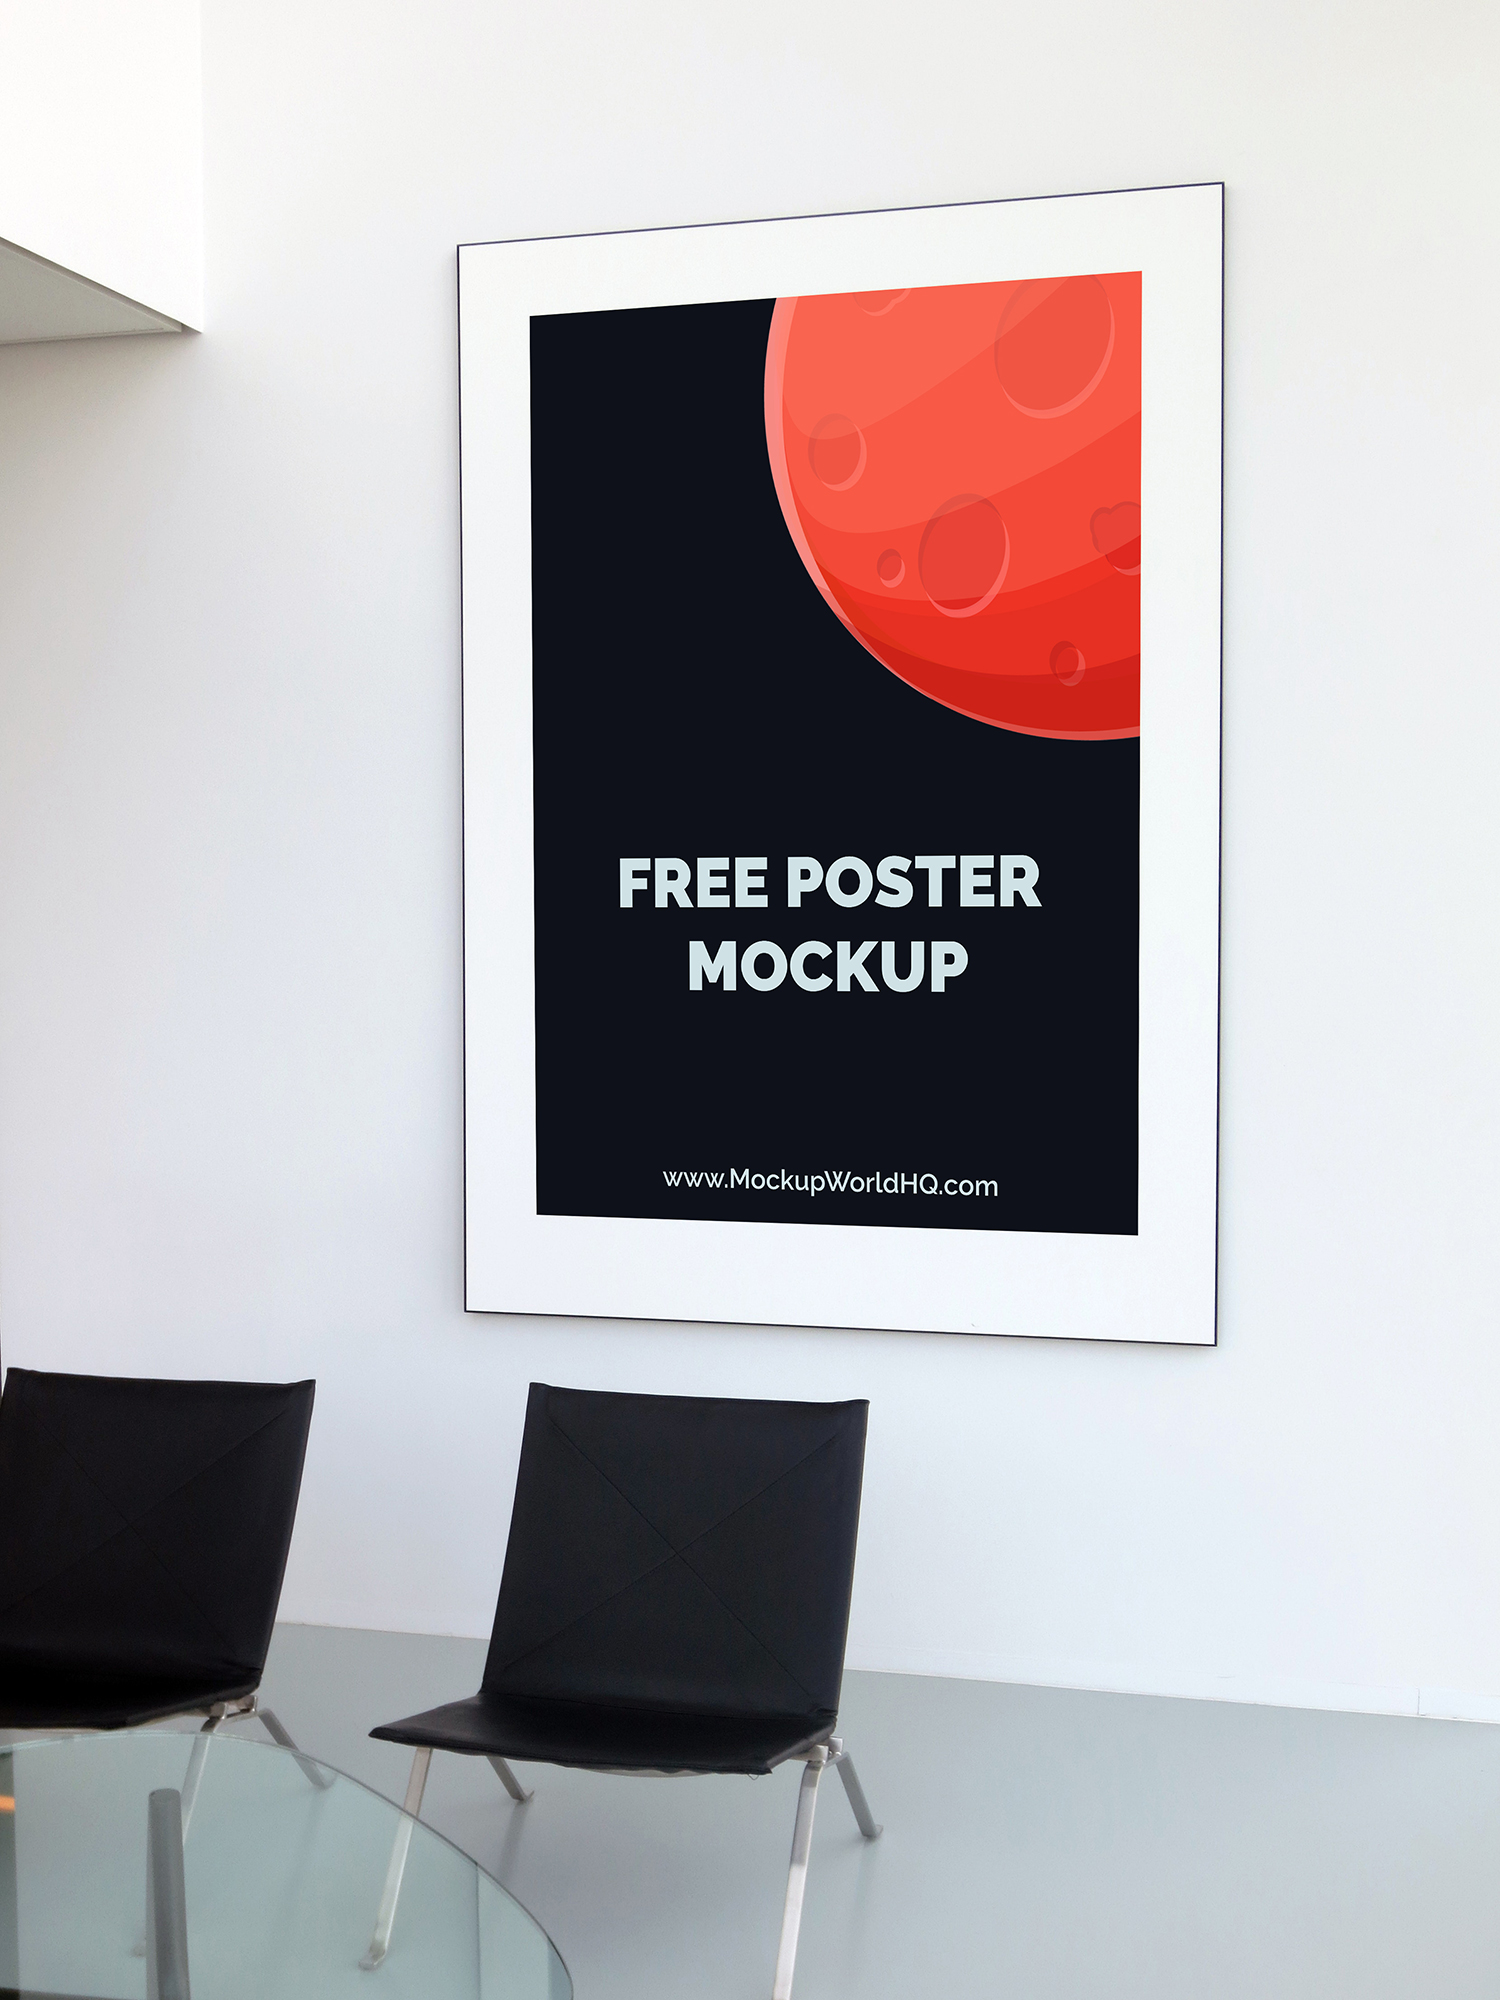 Download Free Indoor Poster Mockup | Mockup World HQ